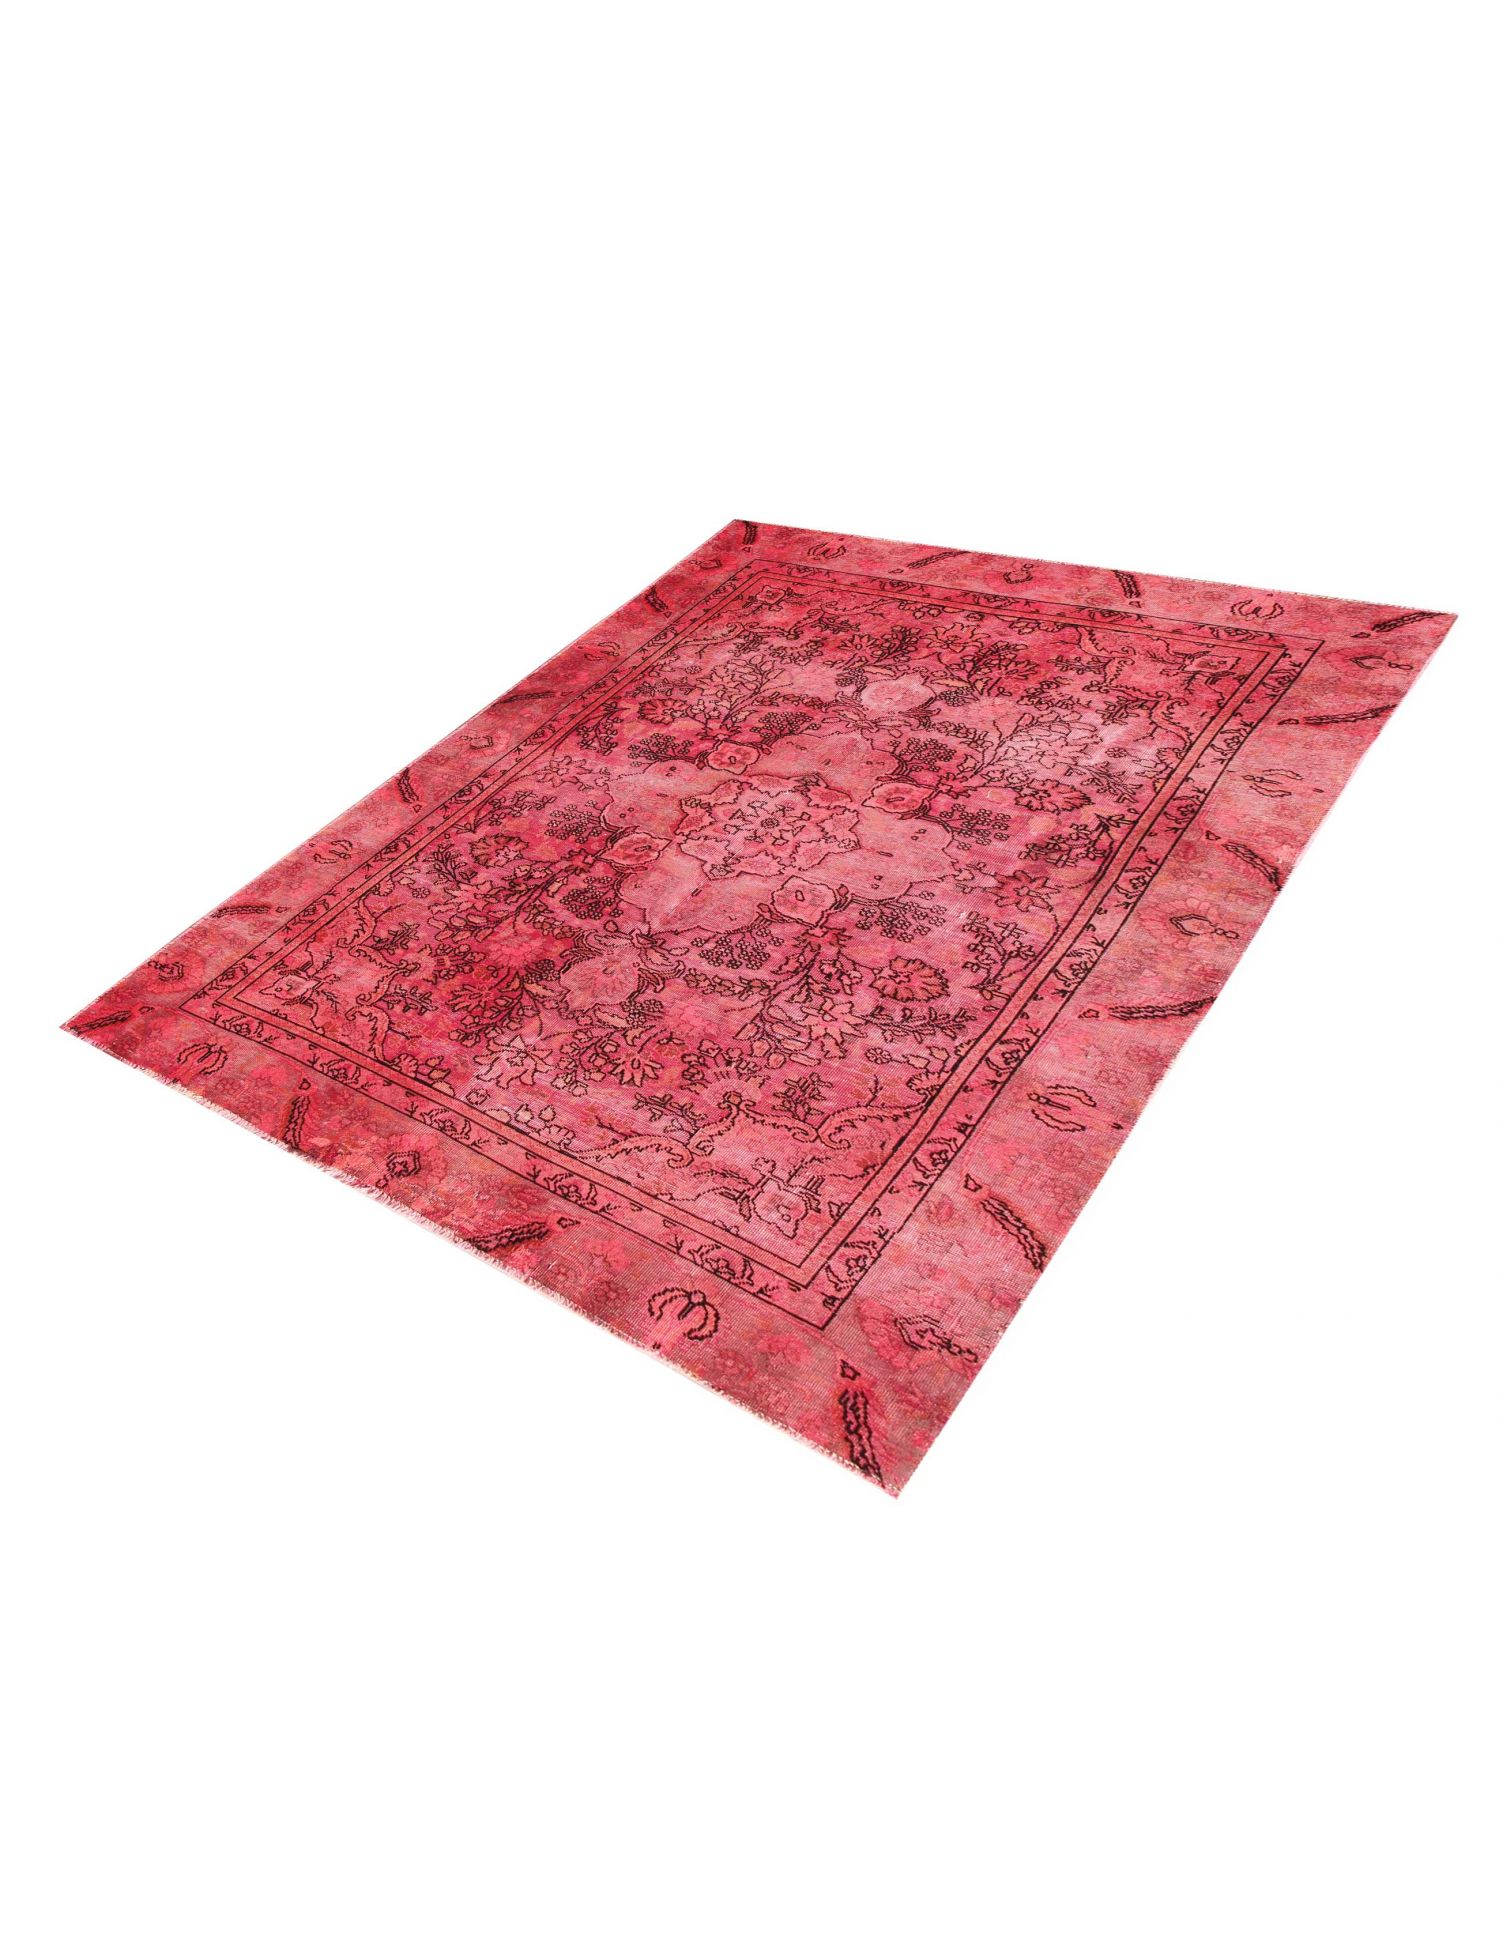 Tappeto vintage persiano  rossio <br/>265 x 180 cm